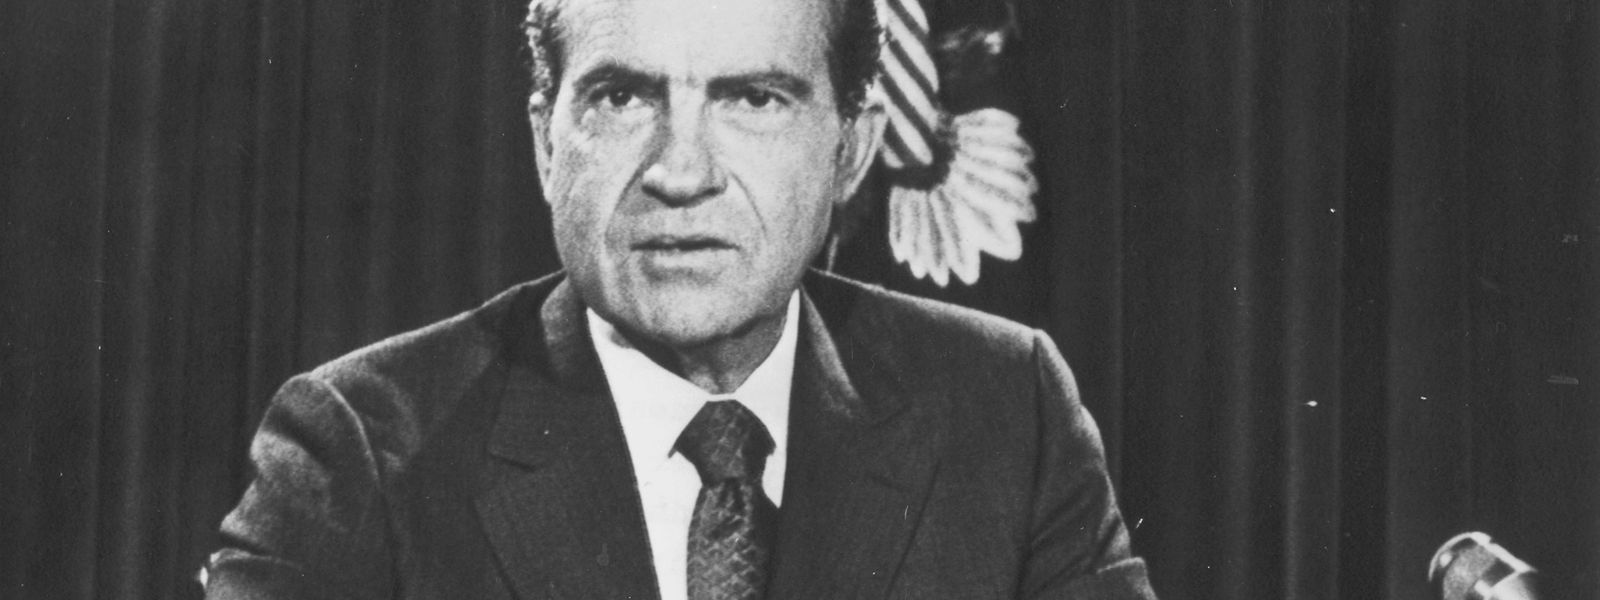 Richard Nixon war von 1969 bis 1974 Präsident der USA.